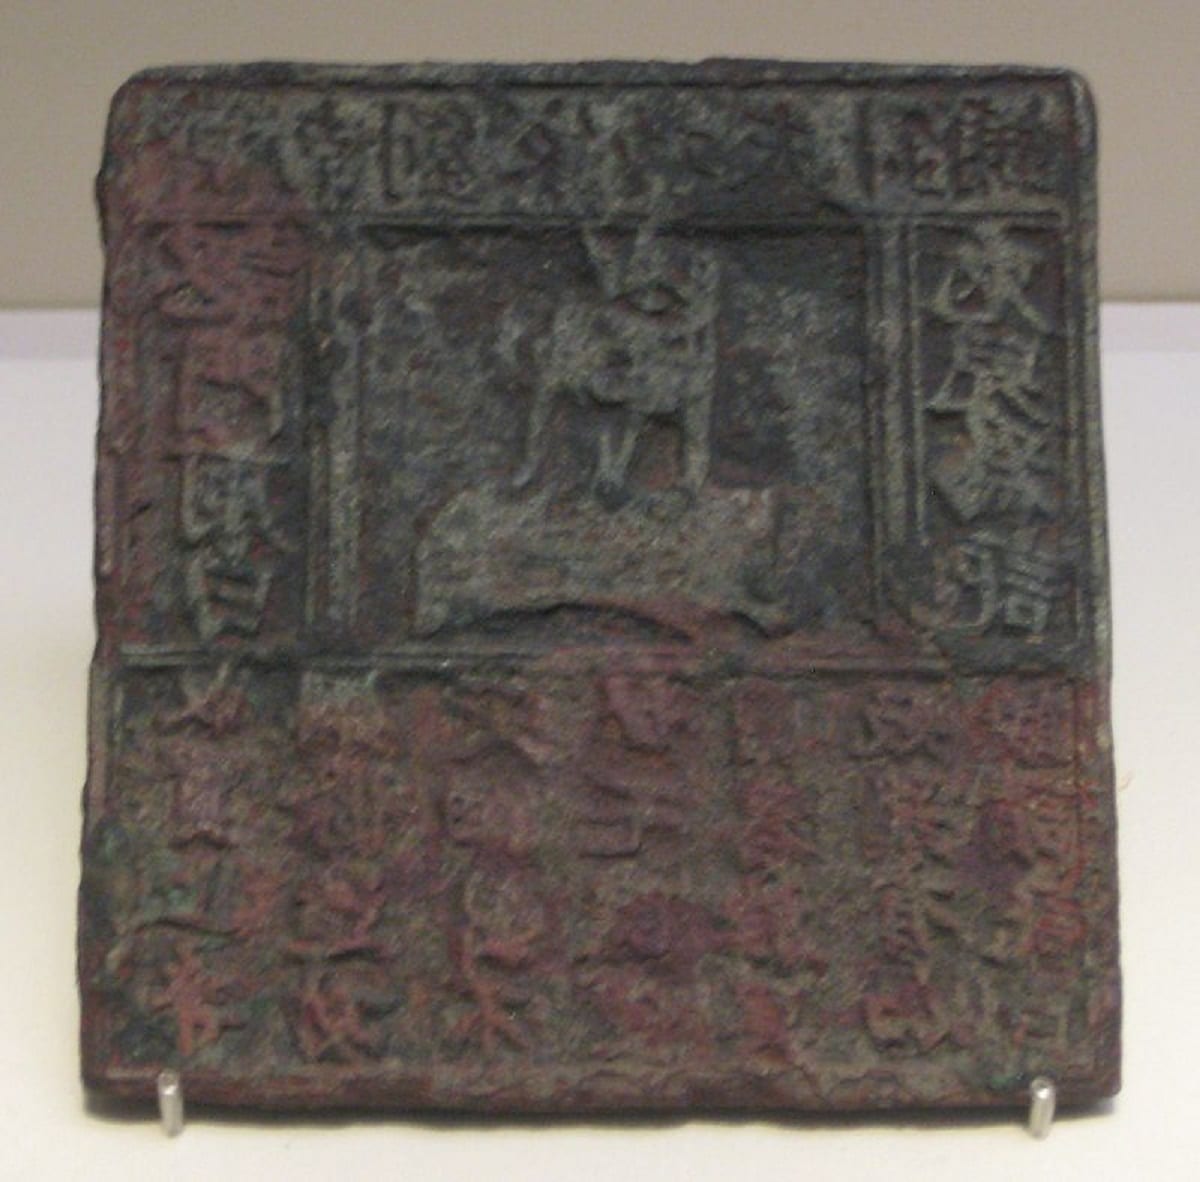 Matrice en bronze d'une publicité, dynastie Song du Nord (Chine).